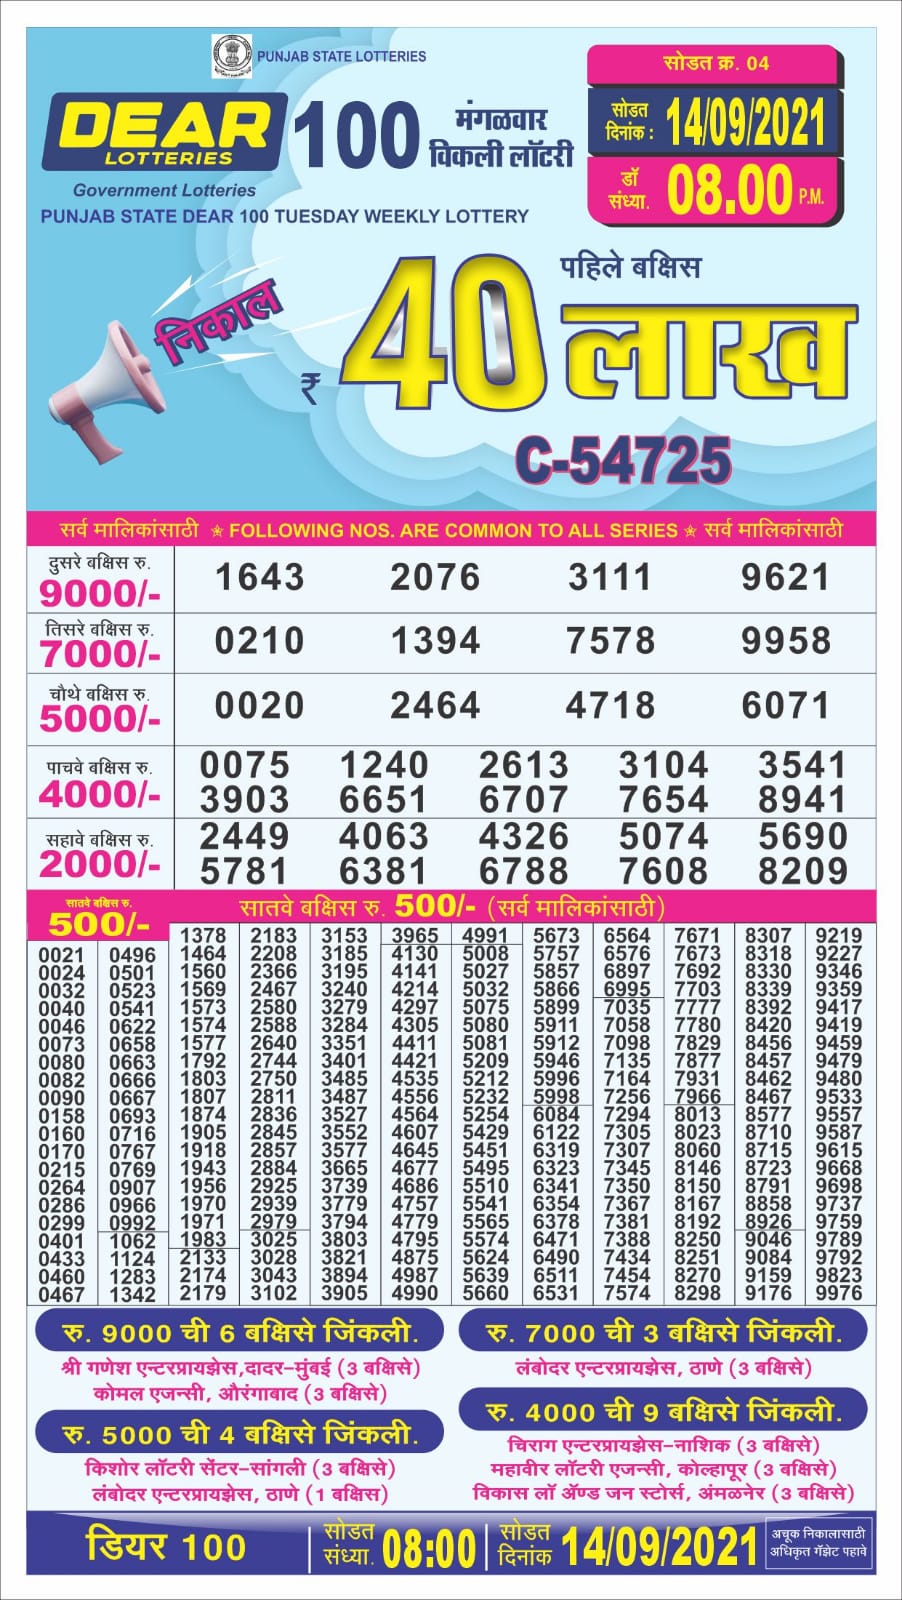 Dear 100 Lottery Result – 14.09.2021